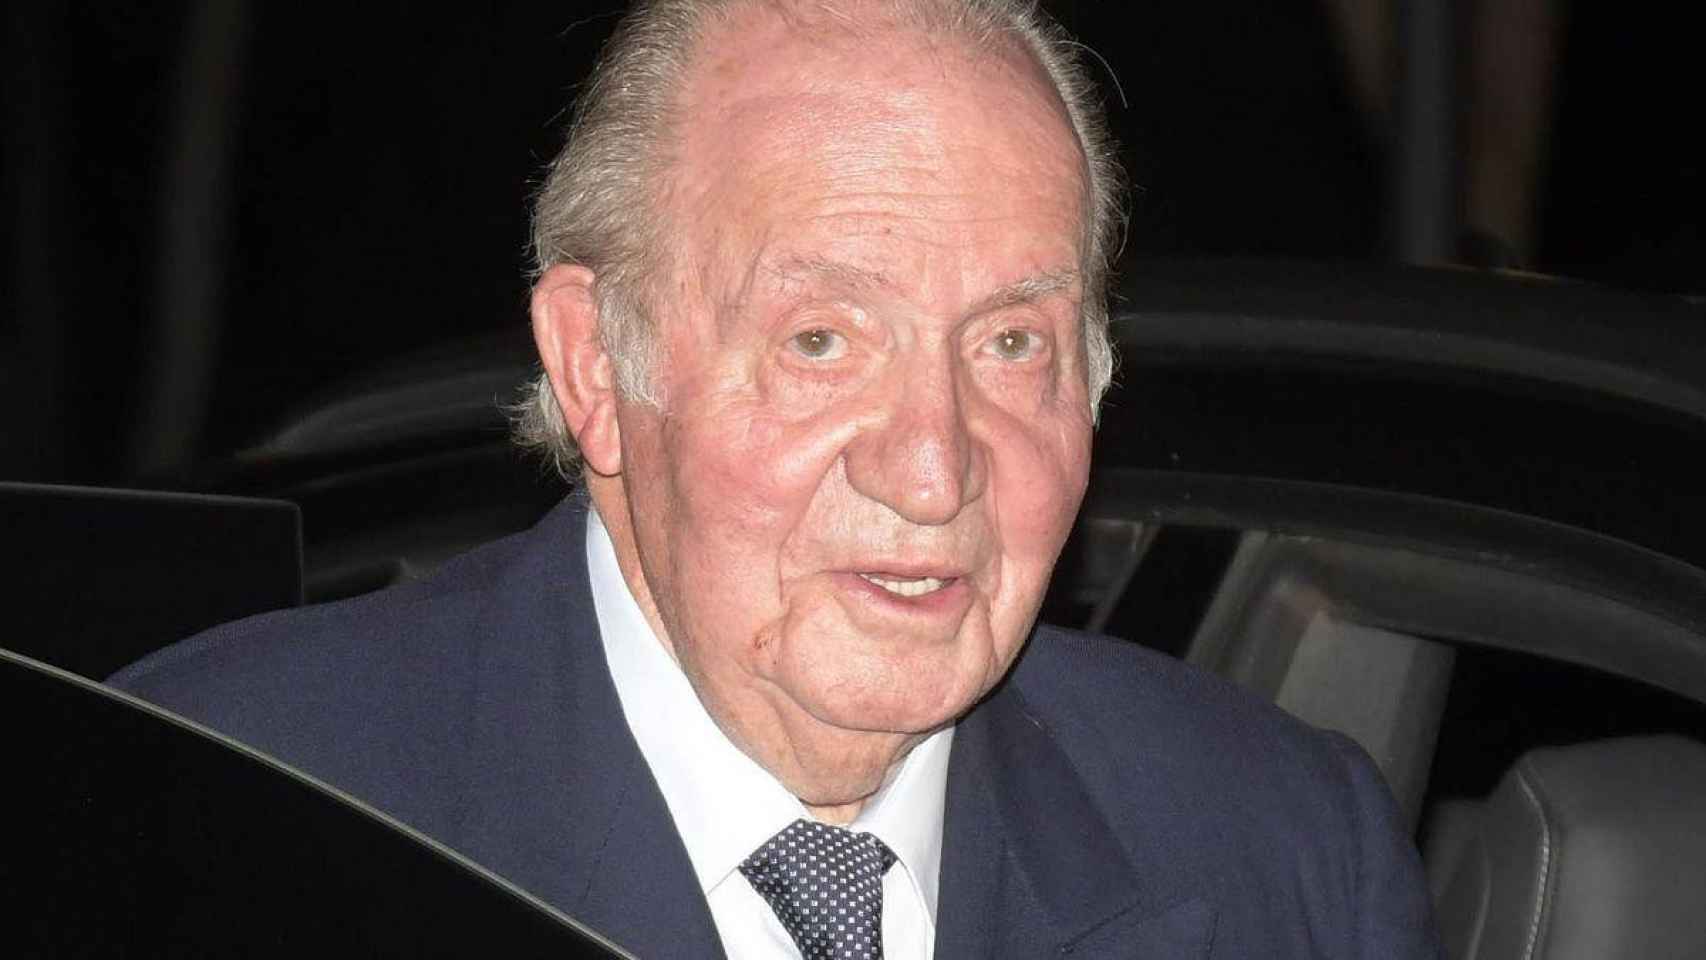 El rey emérito Juan Carlos I / EFE